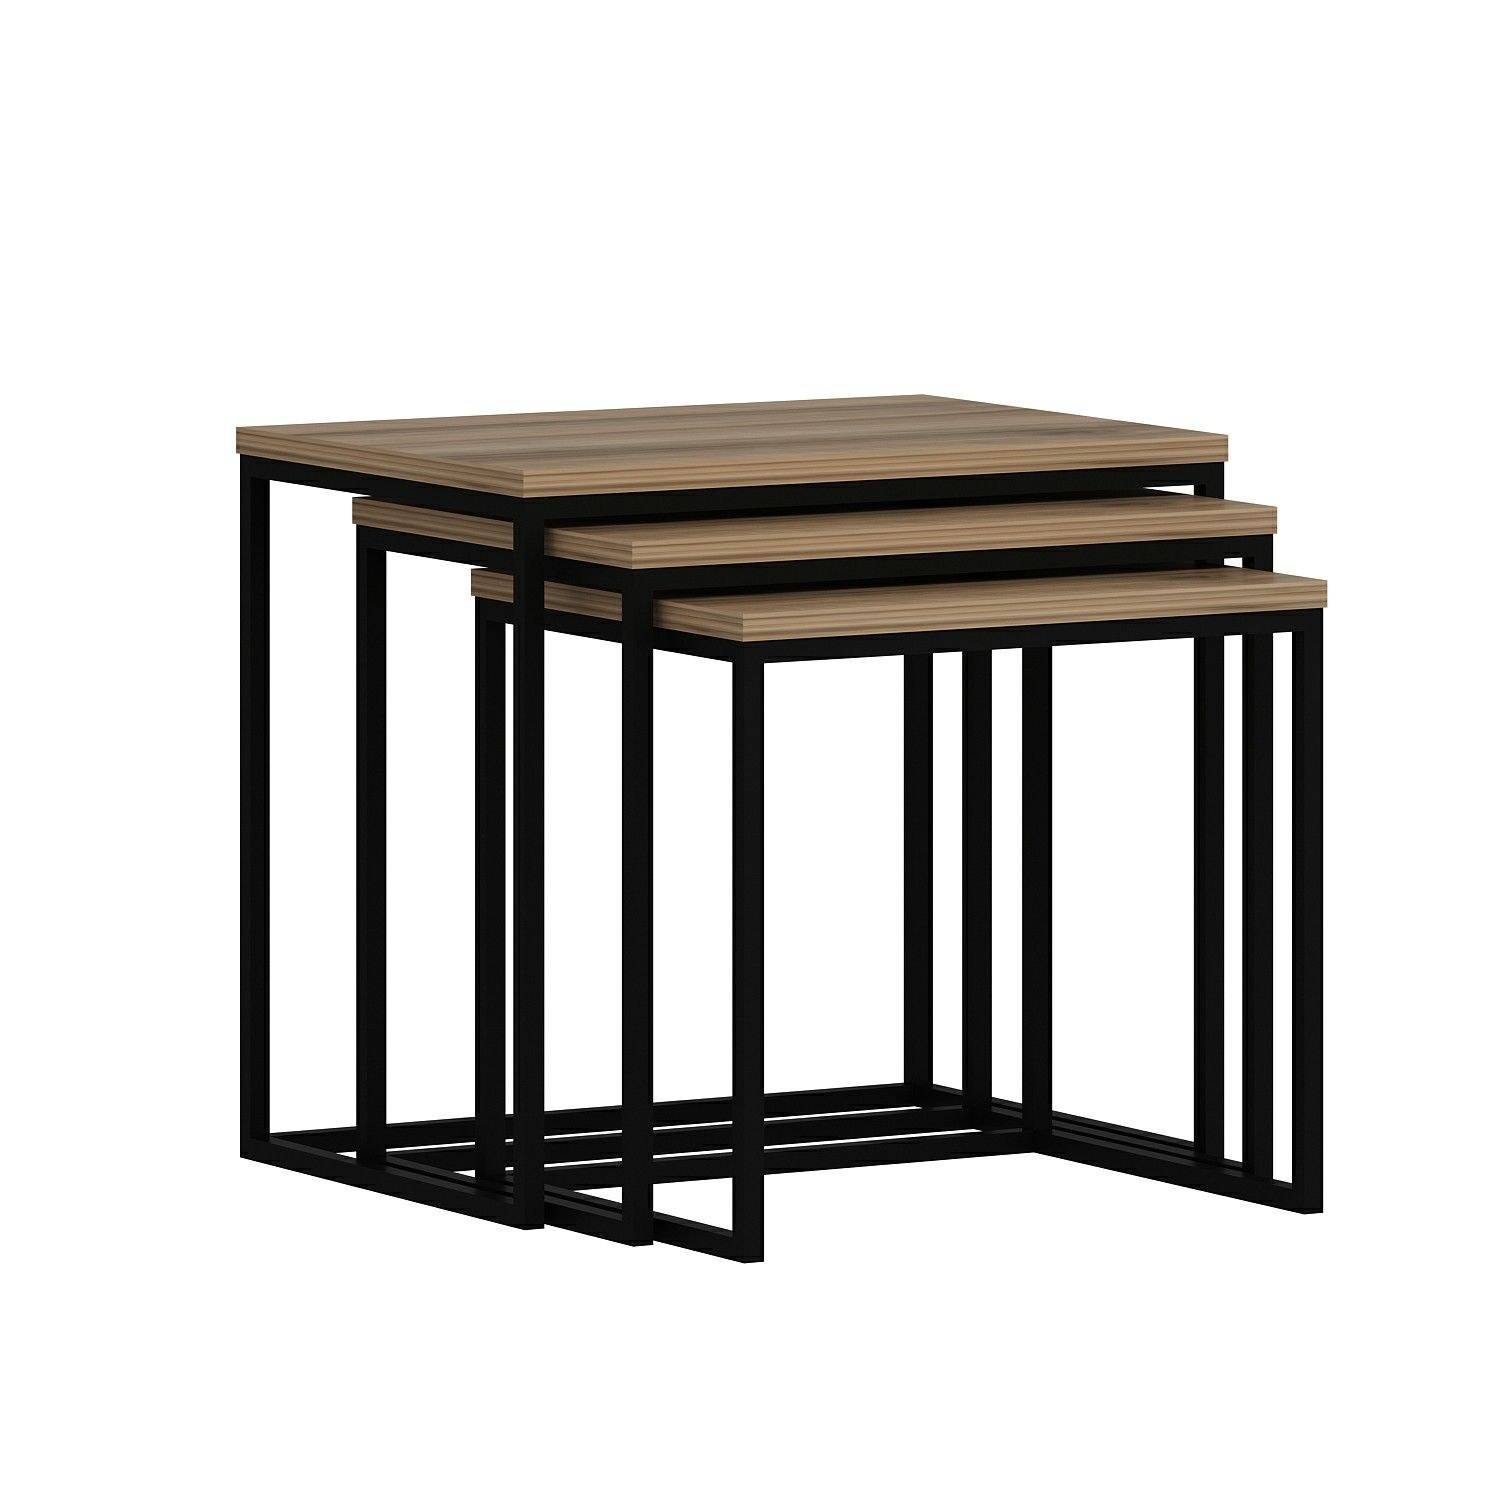 Set van 3 Gili salontafels in industriële stijl, zwart metaal en donker hout